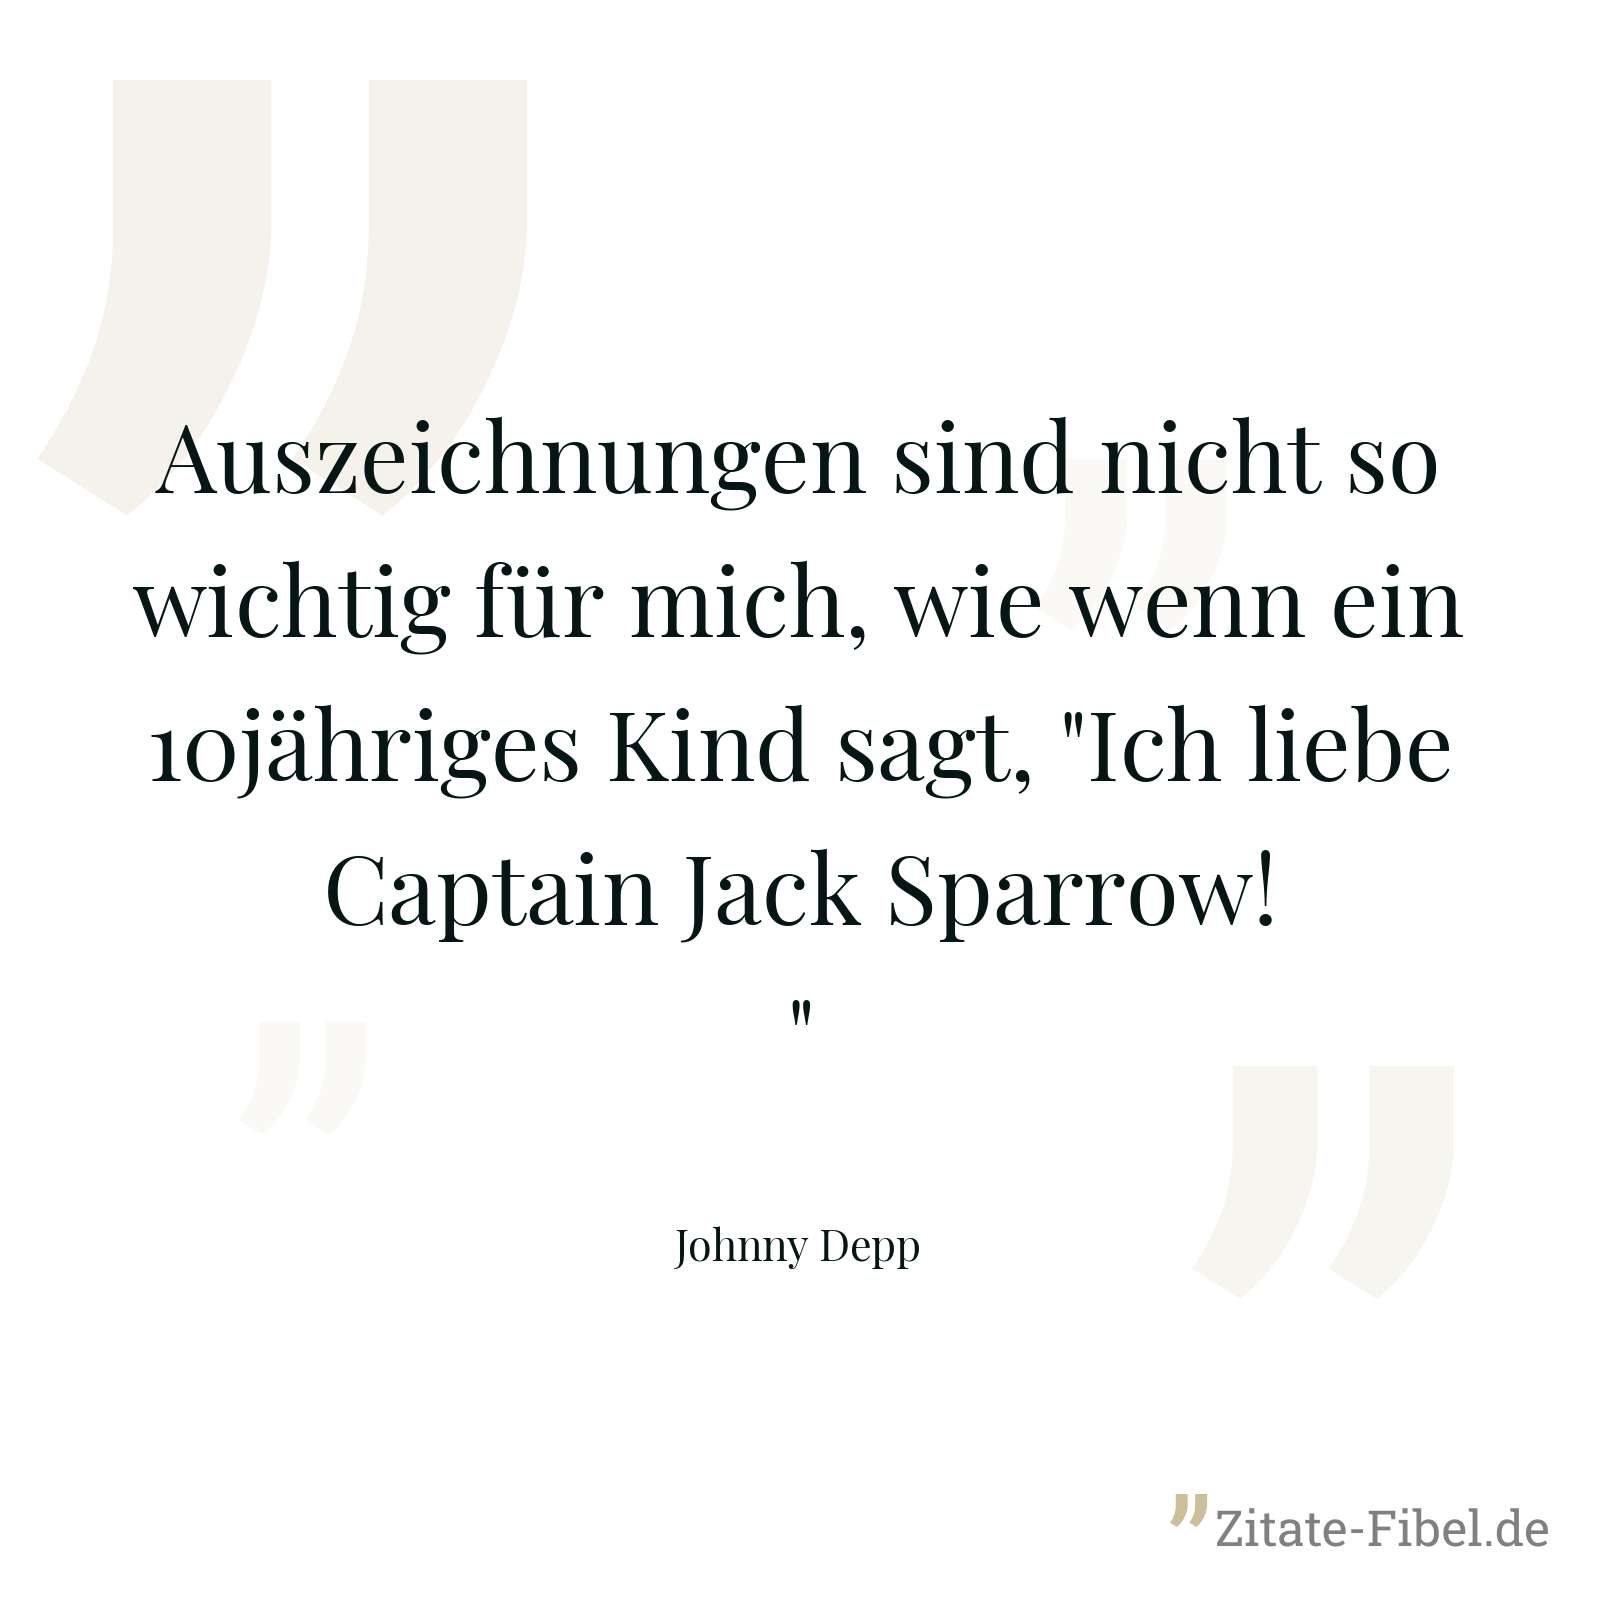 Auszeichnungen sind nicht so wichtig für mich, wie wenn ein 10jähriges Kind sagt, "Ich liebe Captain Jack Sparrow!" - Johnny Depp